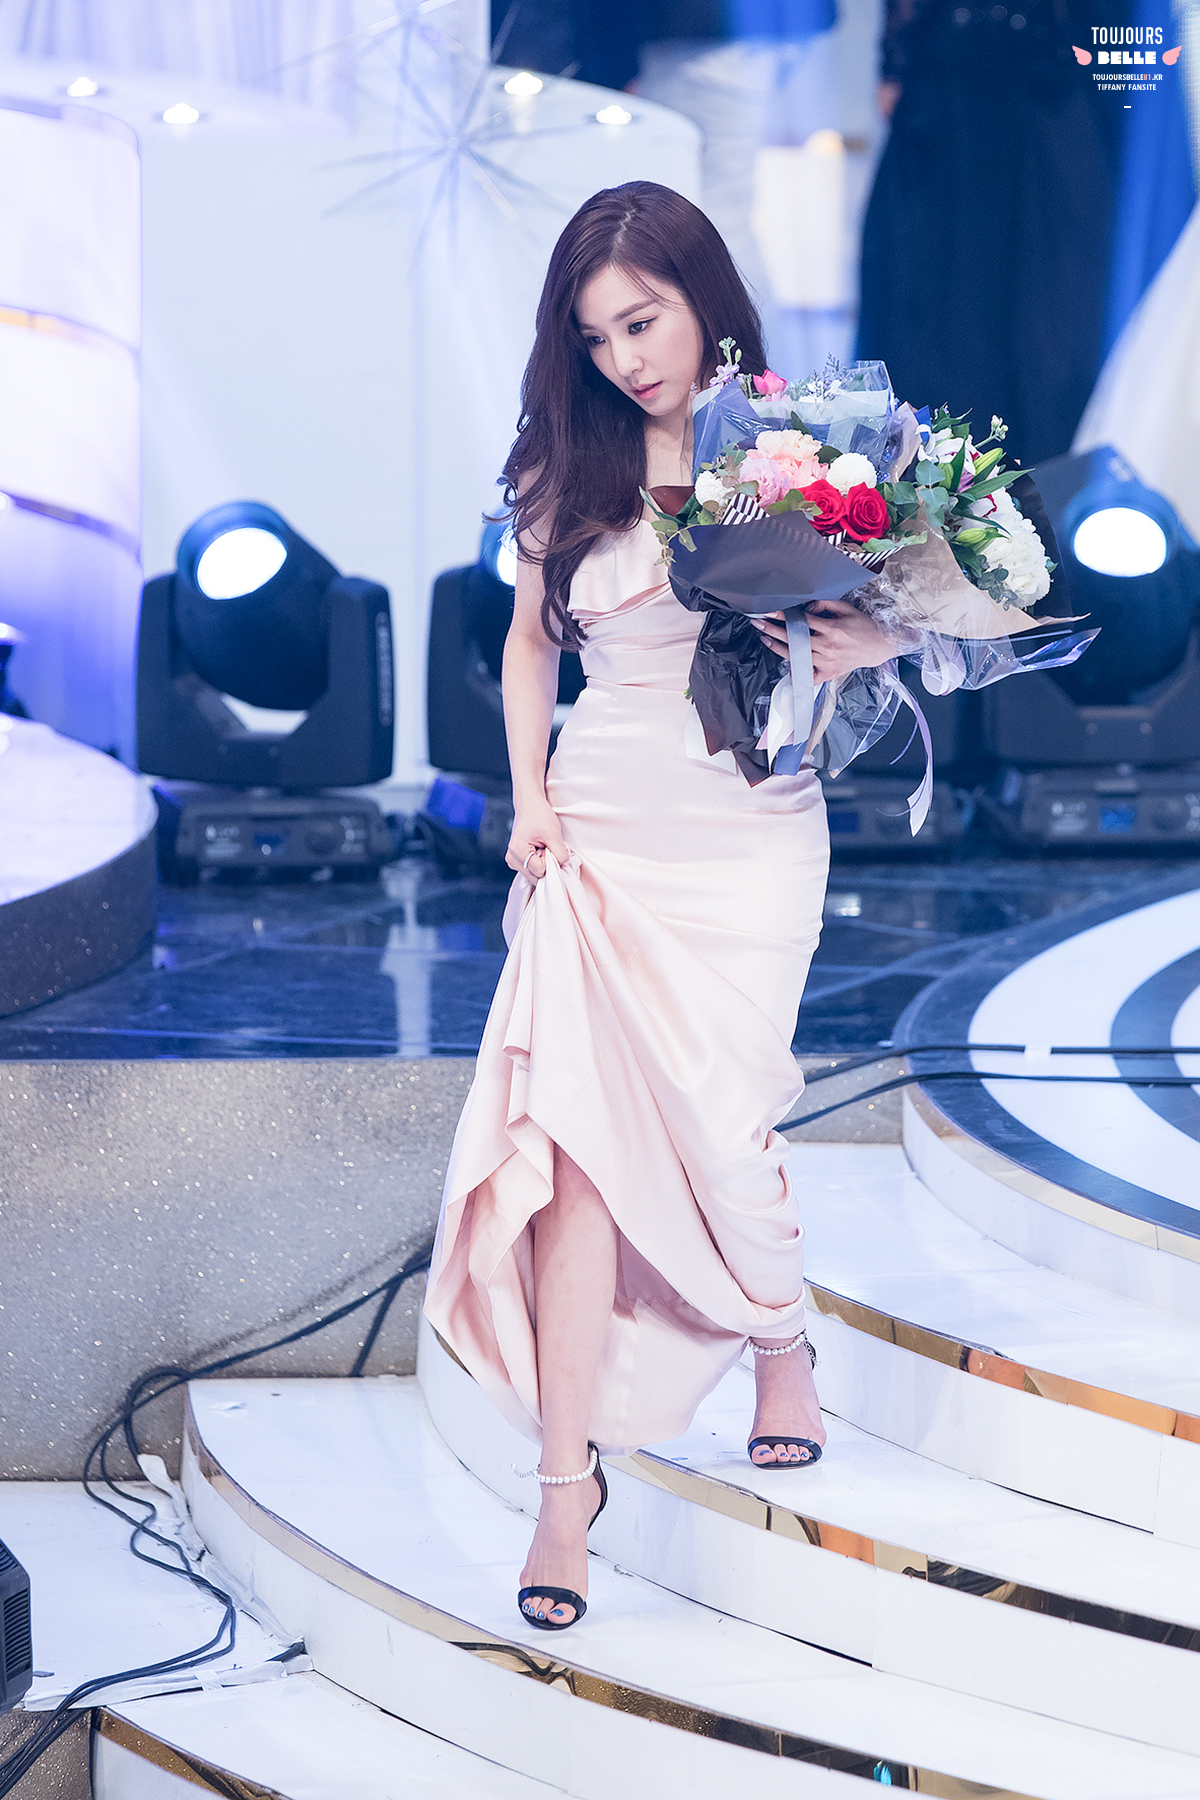 [PIC][24-12-2016]Tiffany tham dự và biểu diễn tại “2016 KBS Entertainment Awards” vào hôm nay - Page 2 31053892433_6a938b50ec_o